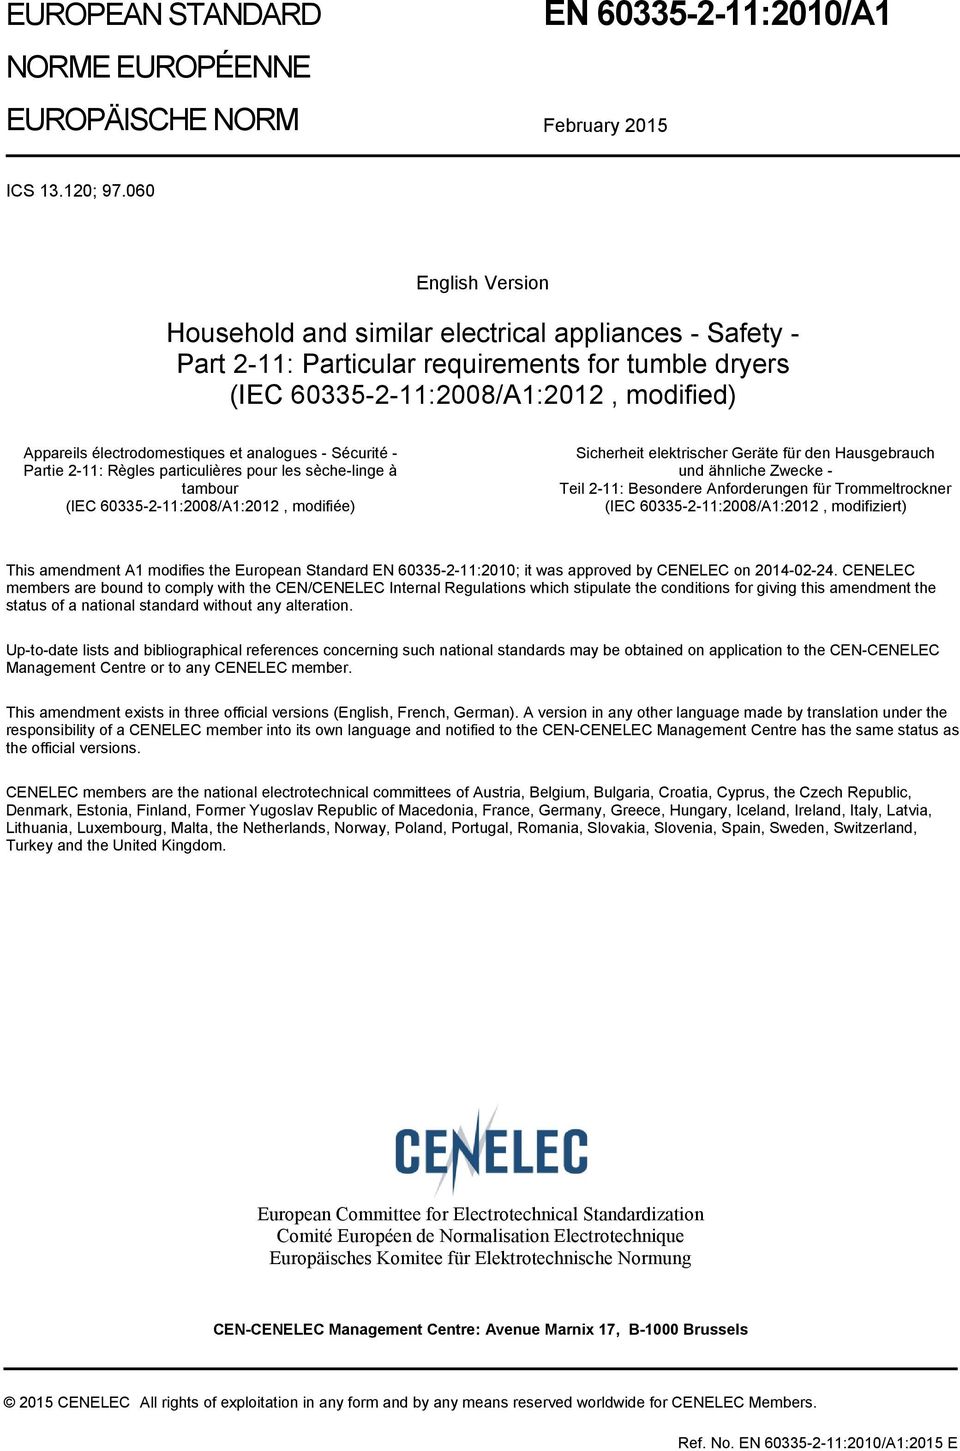 analogues - Sécurité - Partie 2-11: Règles particulières pour les sèche-linge à tambour (IEC 60335-2-11:2008/A1:2012, modifiée) Sicherheit elektrischer Geräte für den Hausgebrauch und ähnliche Zwecke